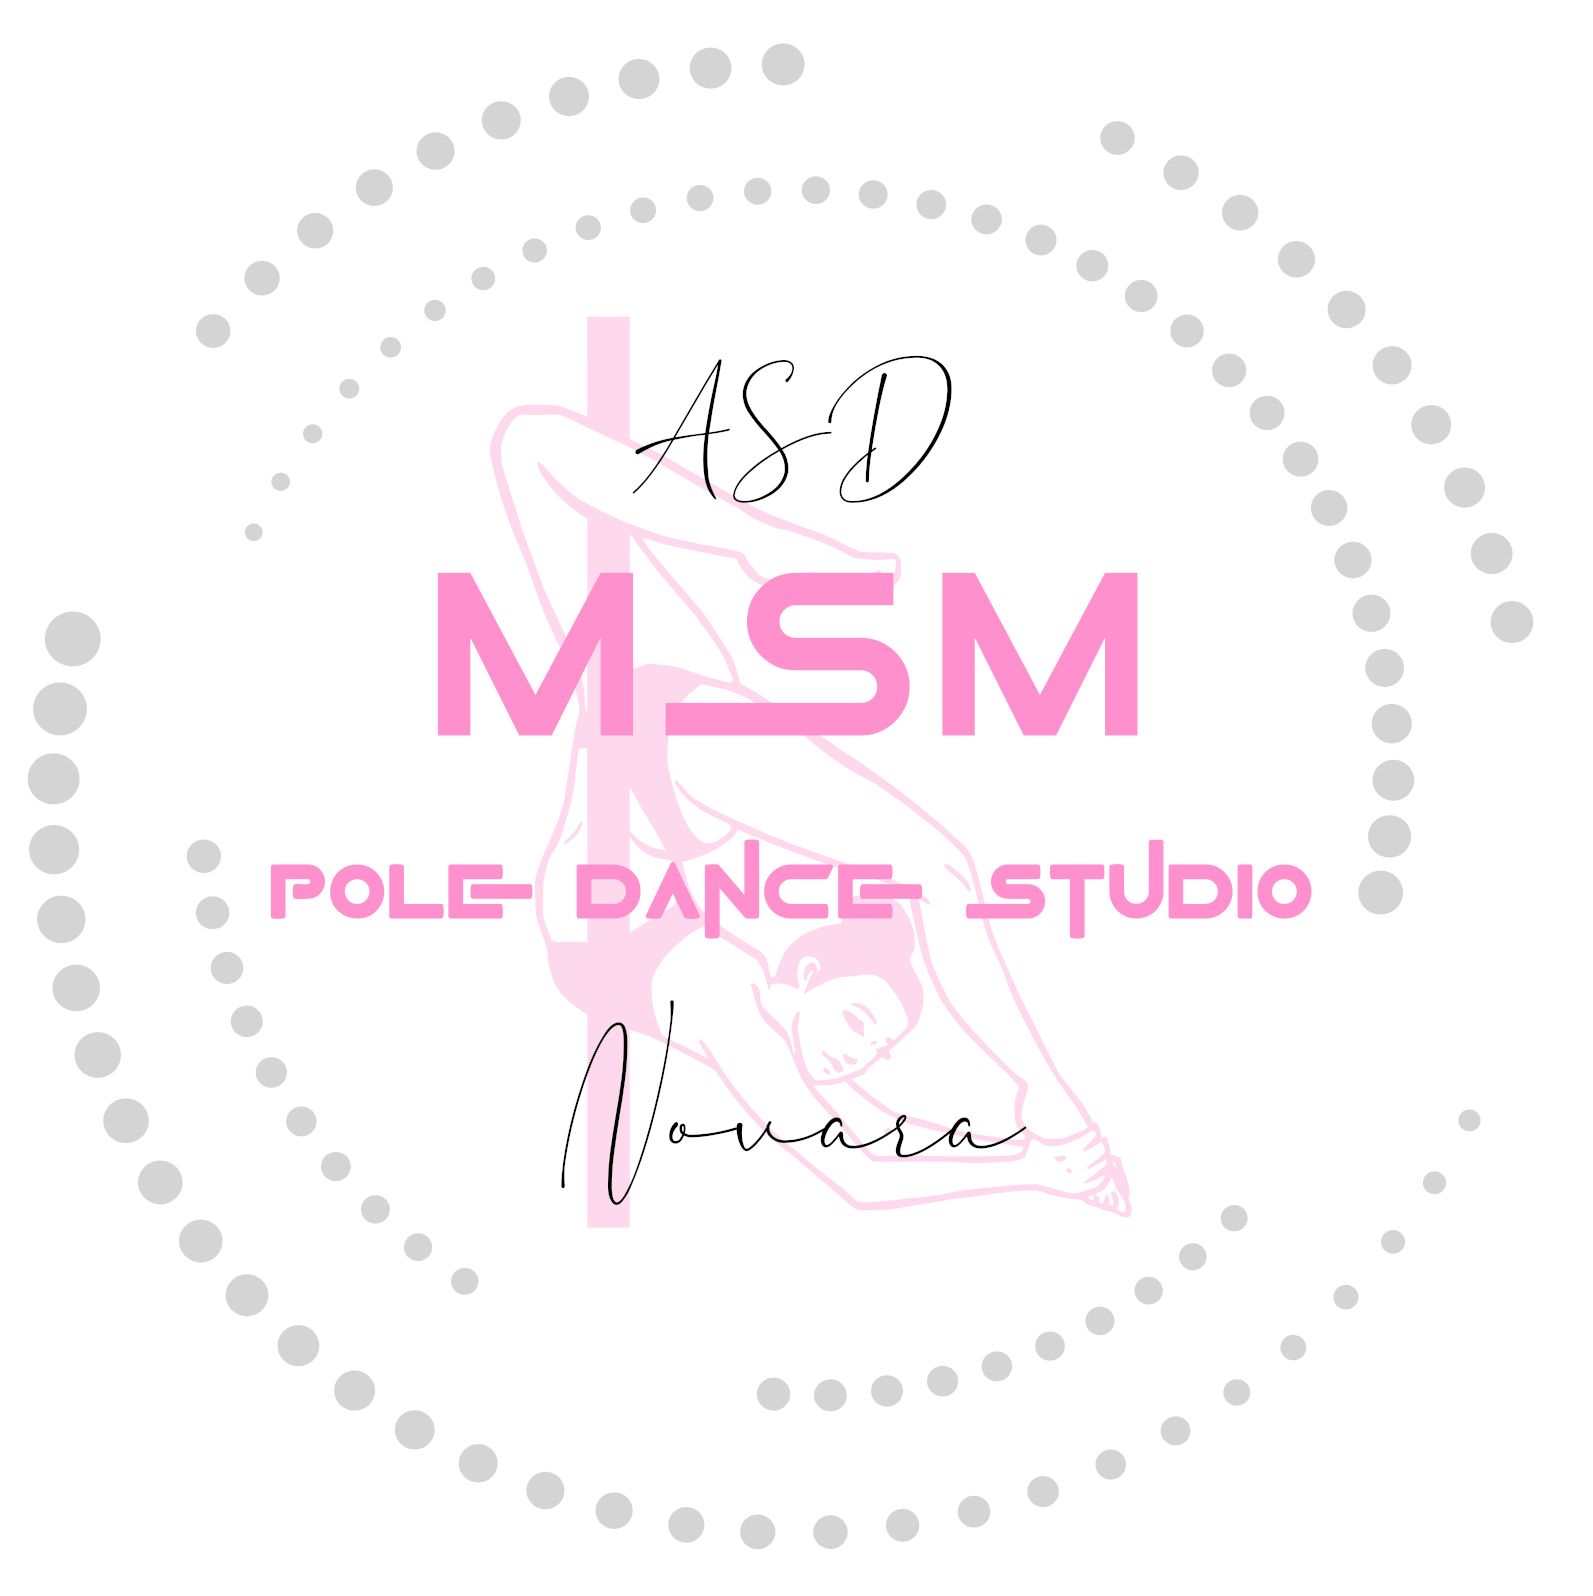 MSM Pole Dance Studio